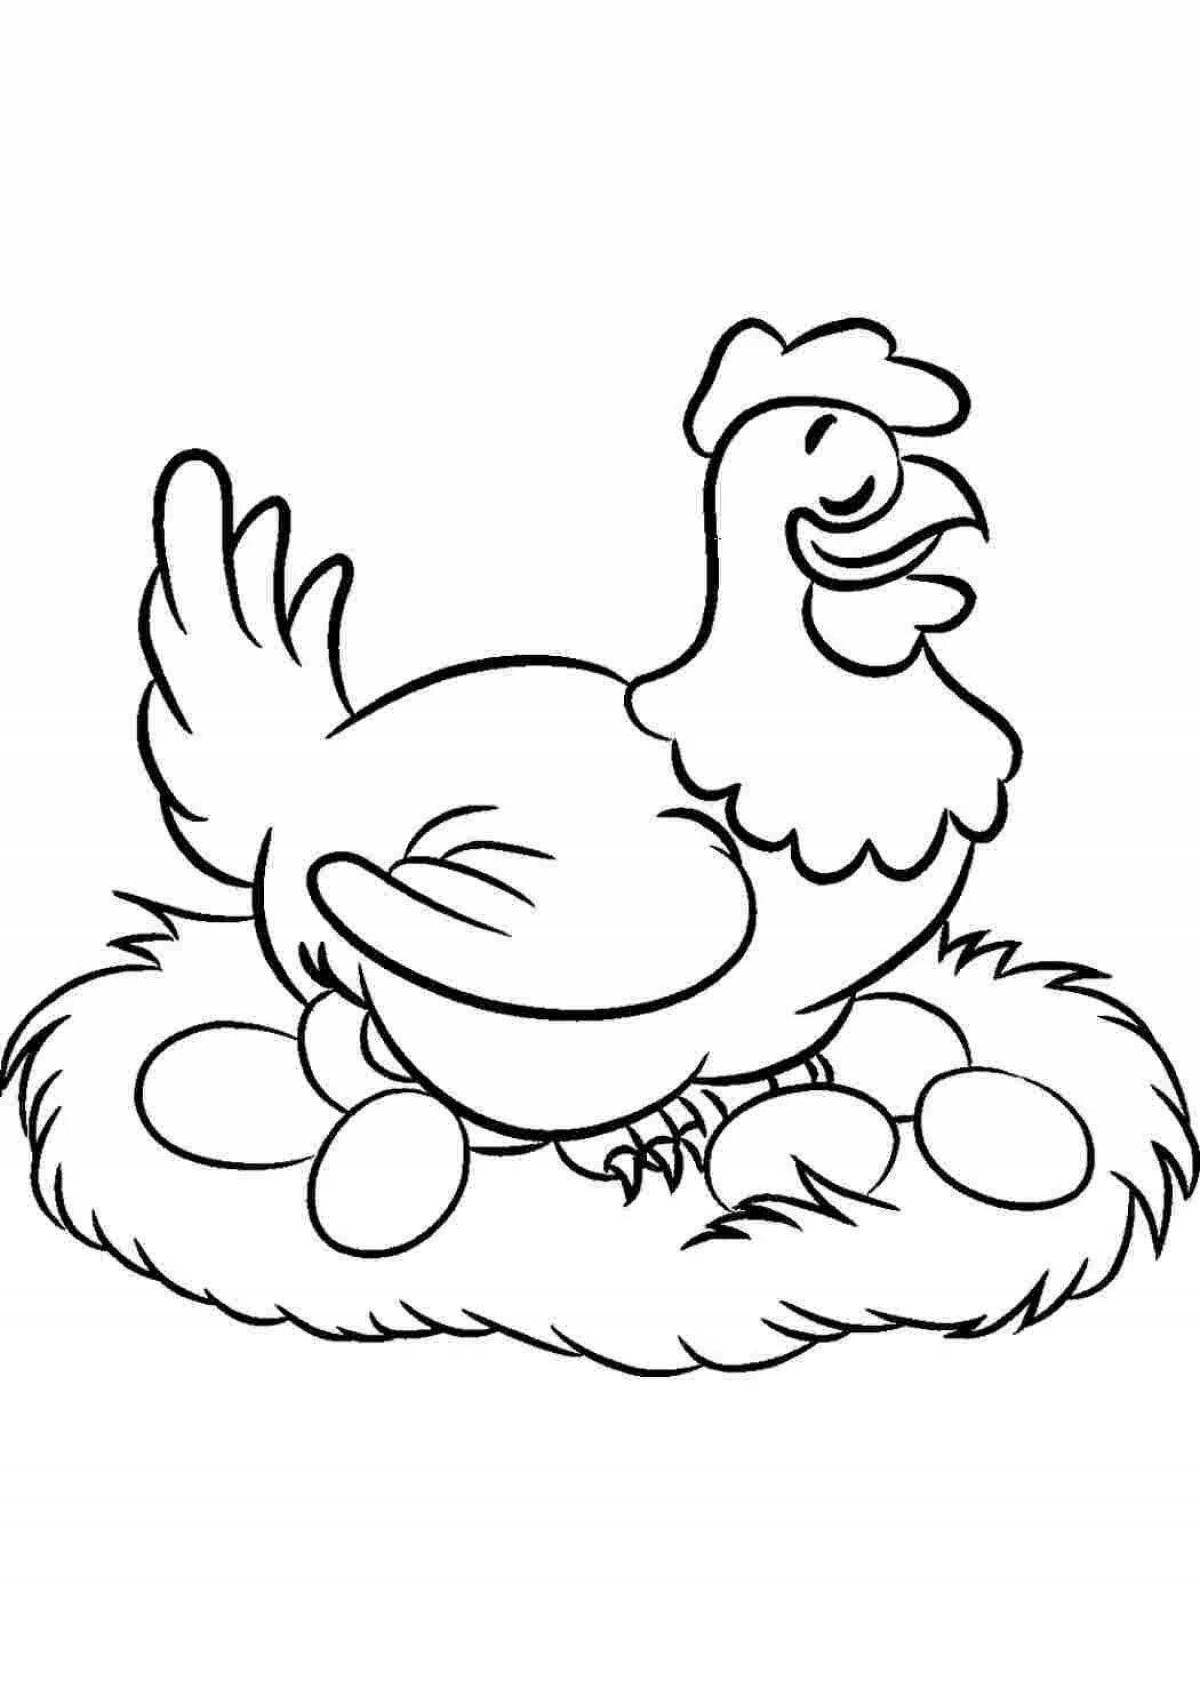 Игривый рисунок курицы для детей